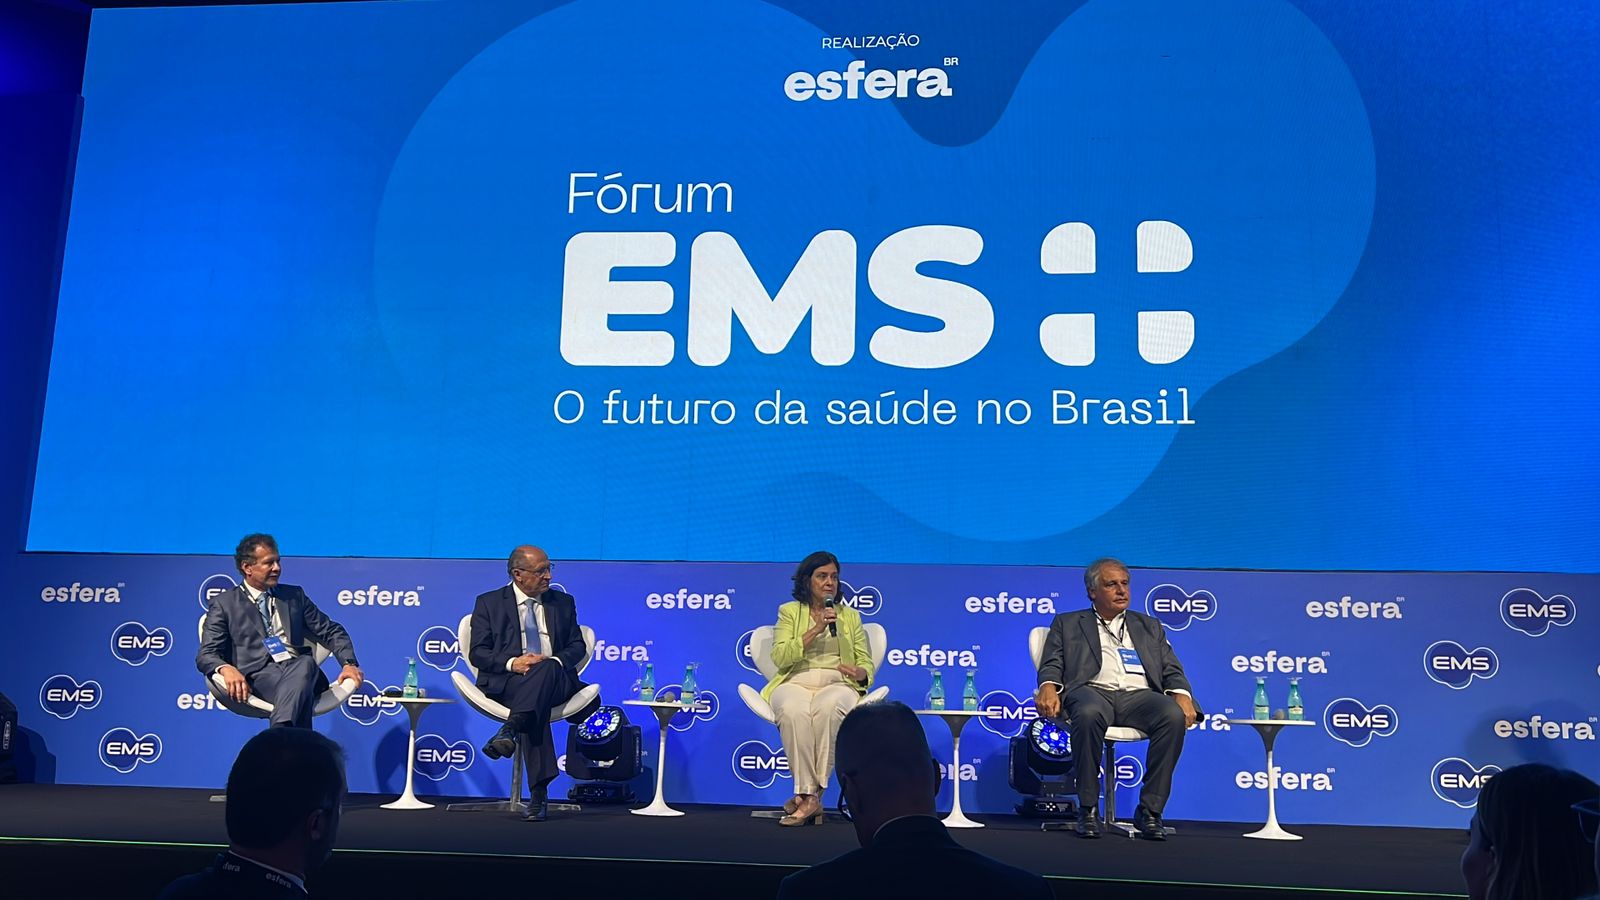 Formalização da parceria entre EMS e Fiocruz ocorreu em evento realizado pelo laboratório farmacêutico e a Esfera Brasil (Foto: Divulgação)